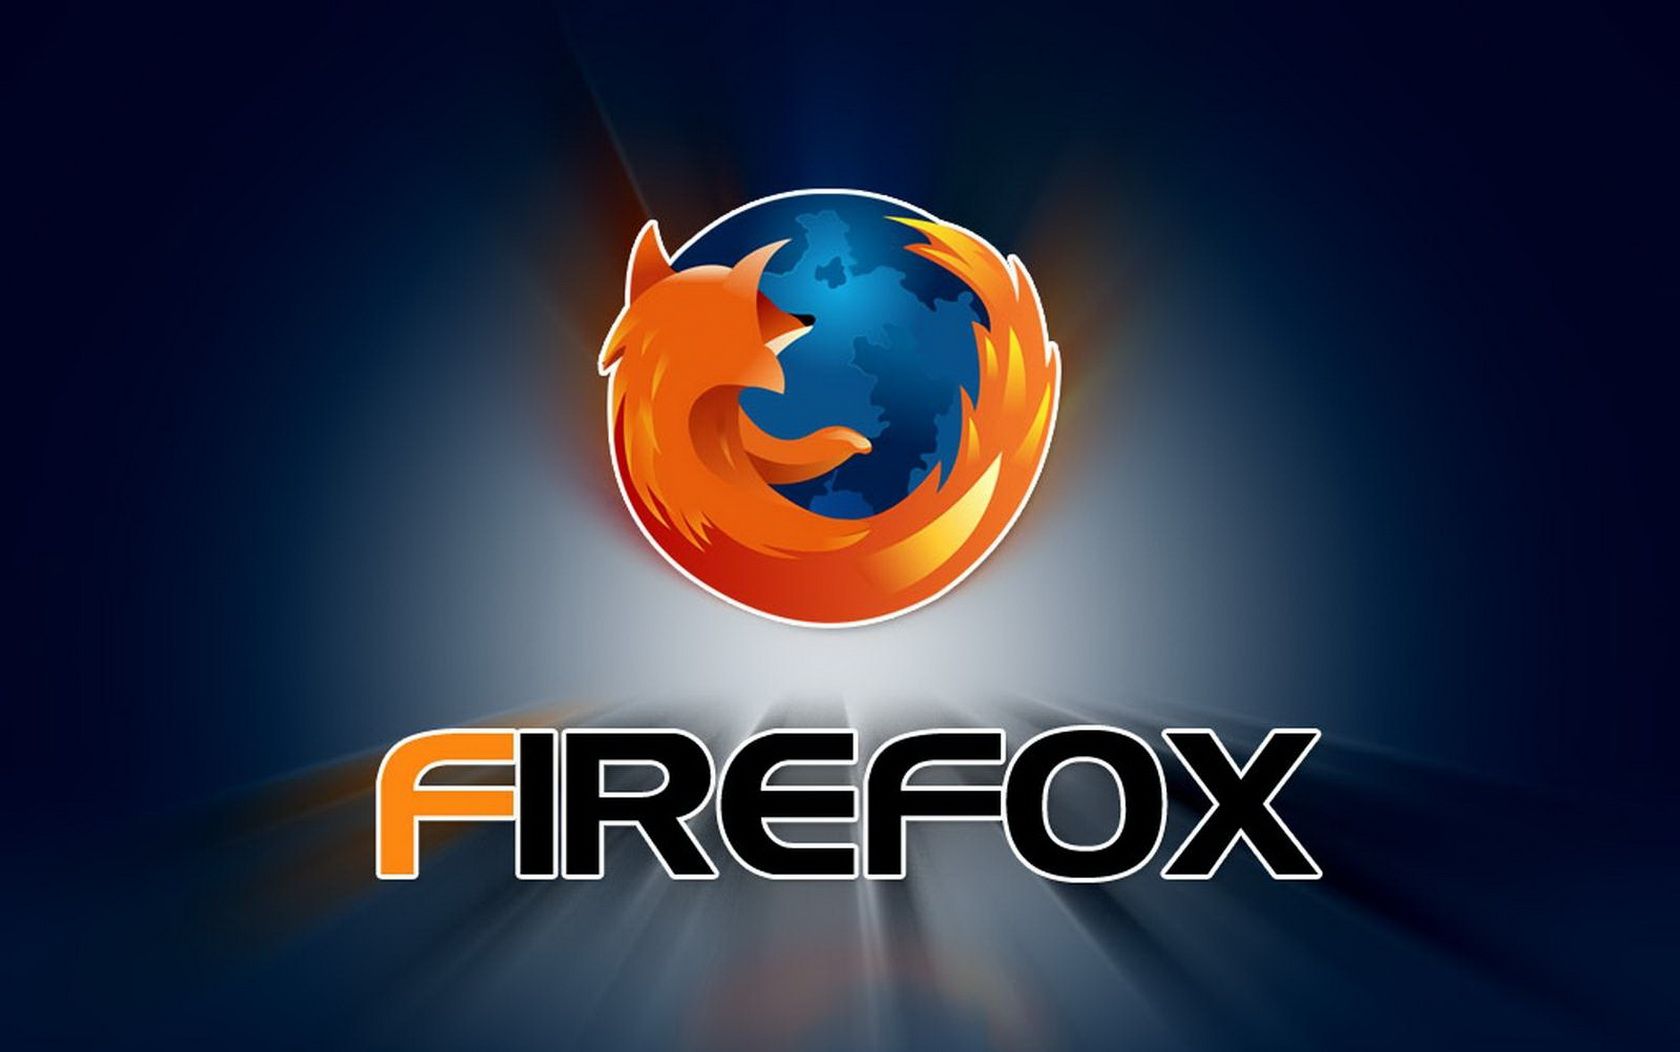 mozilla firefox start page free download